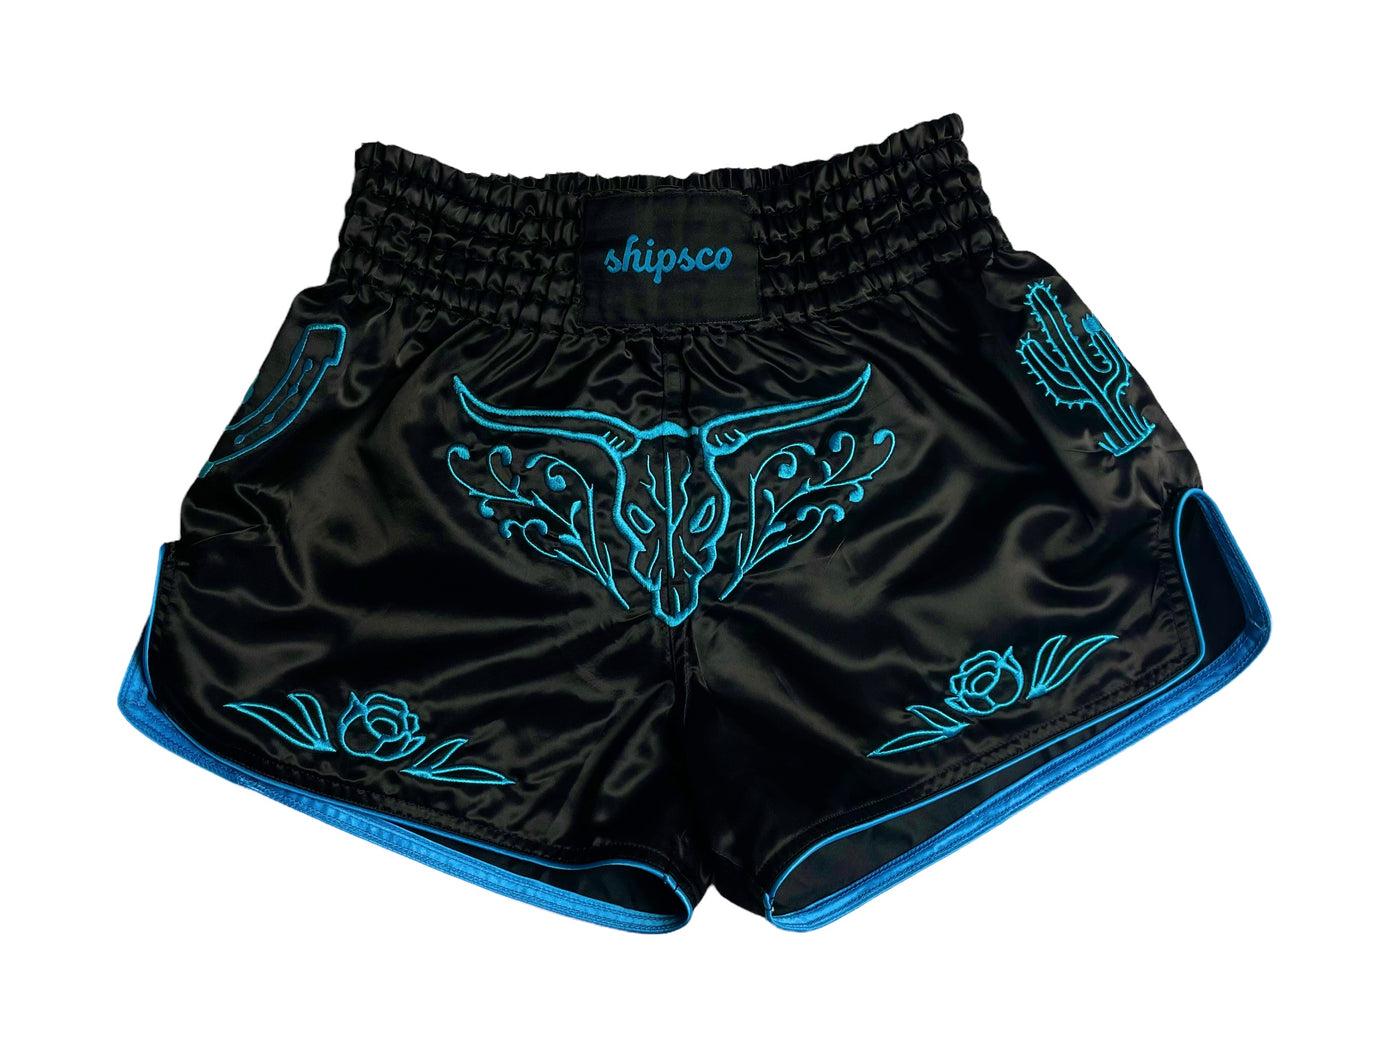 Los Vaqueros Black and Blue Western Muay Thai Shorts